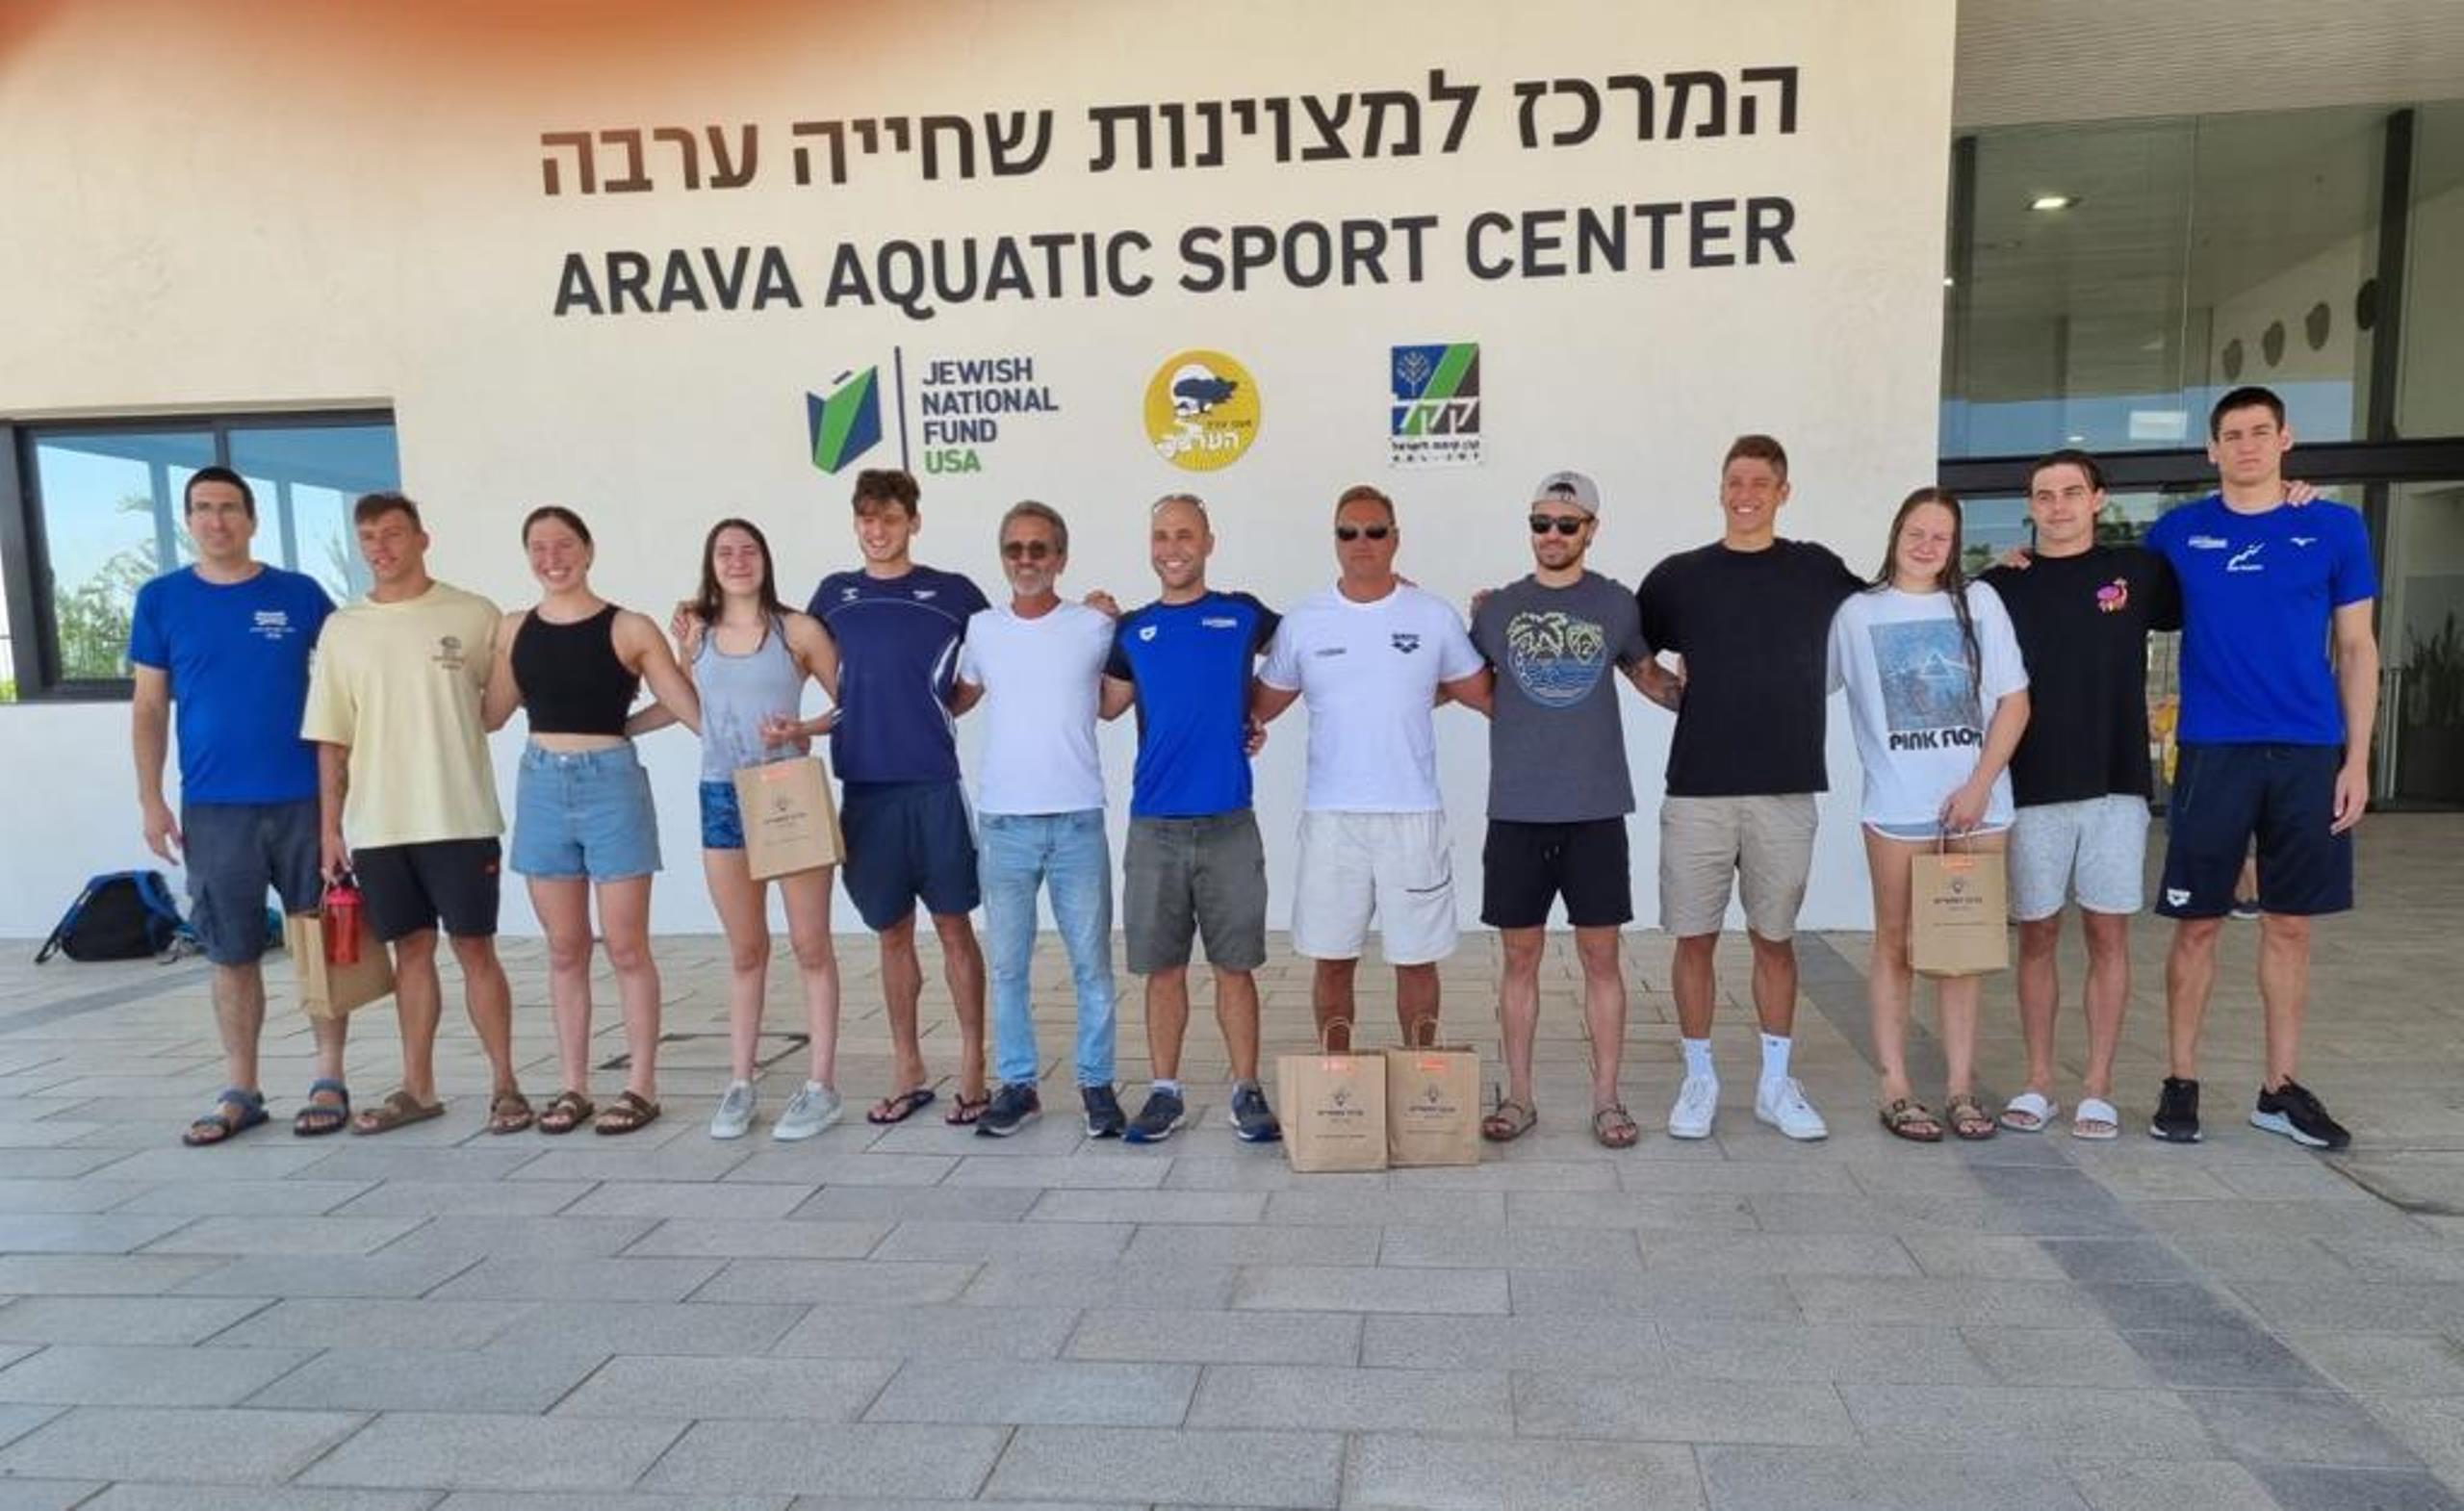 נבחרת ישראל בשחייה במחנה אימונים במרכז מצוינות בשחייה בקריית הספורט בספיר ע"ש אוולין ליפר-גרוס בערבה התיכונה